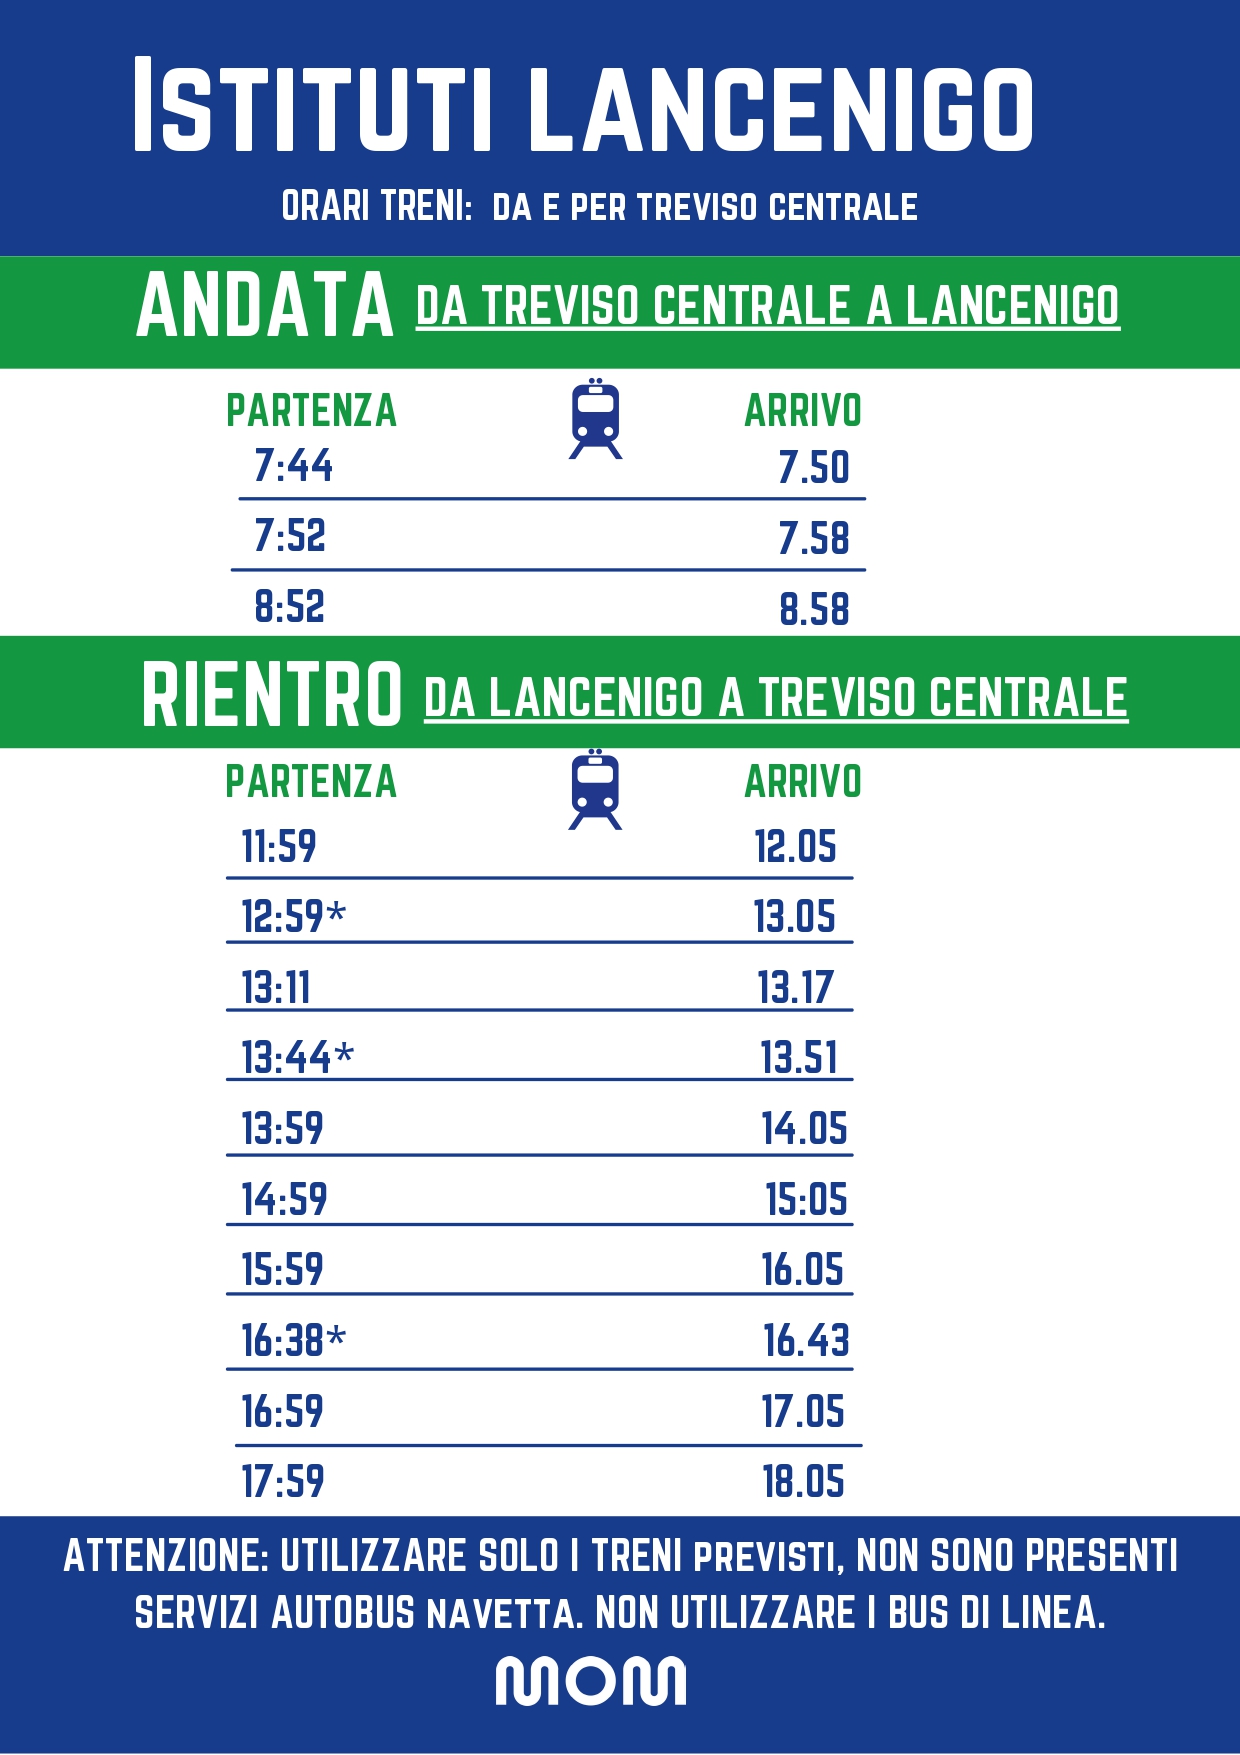 MOM Istituti Lancenigo - Orari treni da e per Treviso centrale 